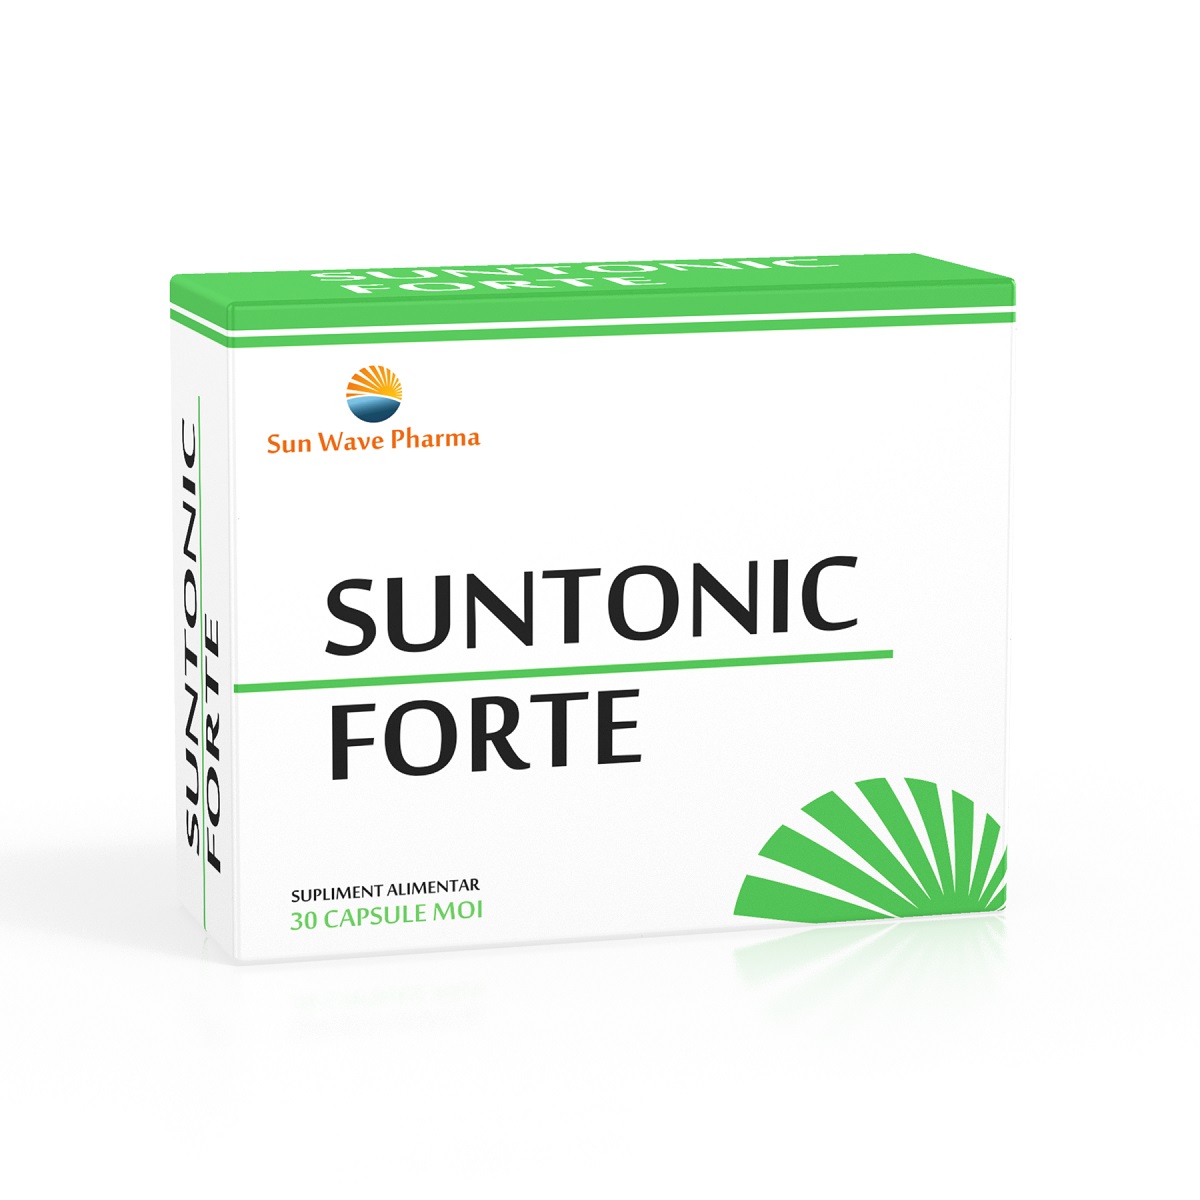 SUNTONIC FORTE X 30CPS SUNWAVE